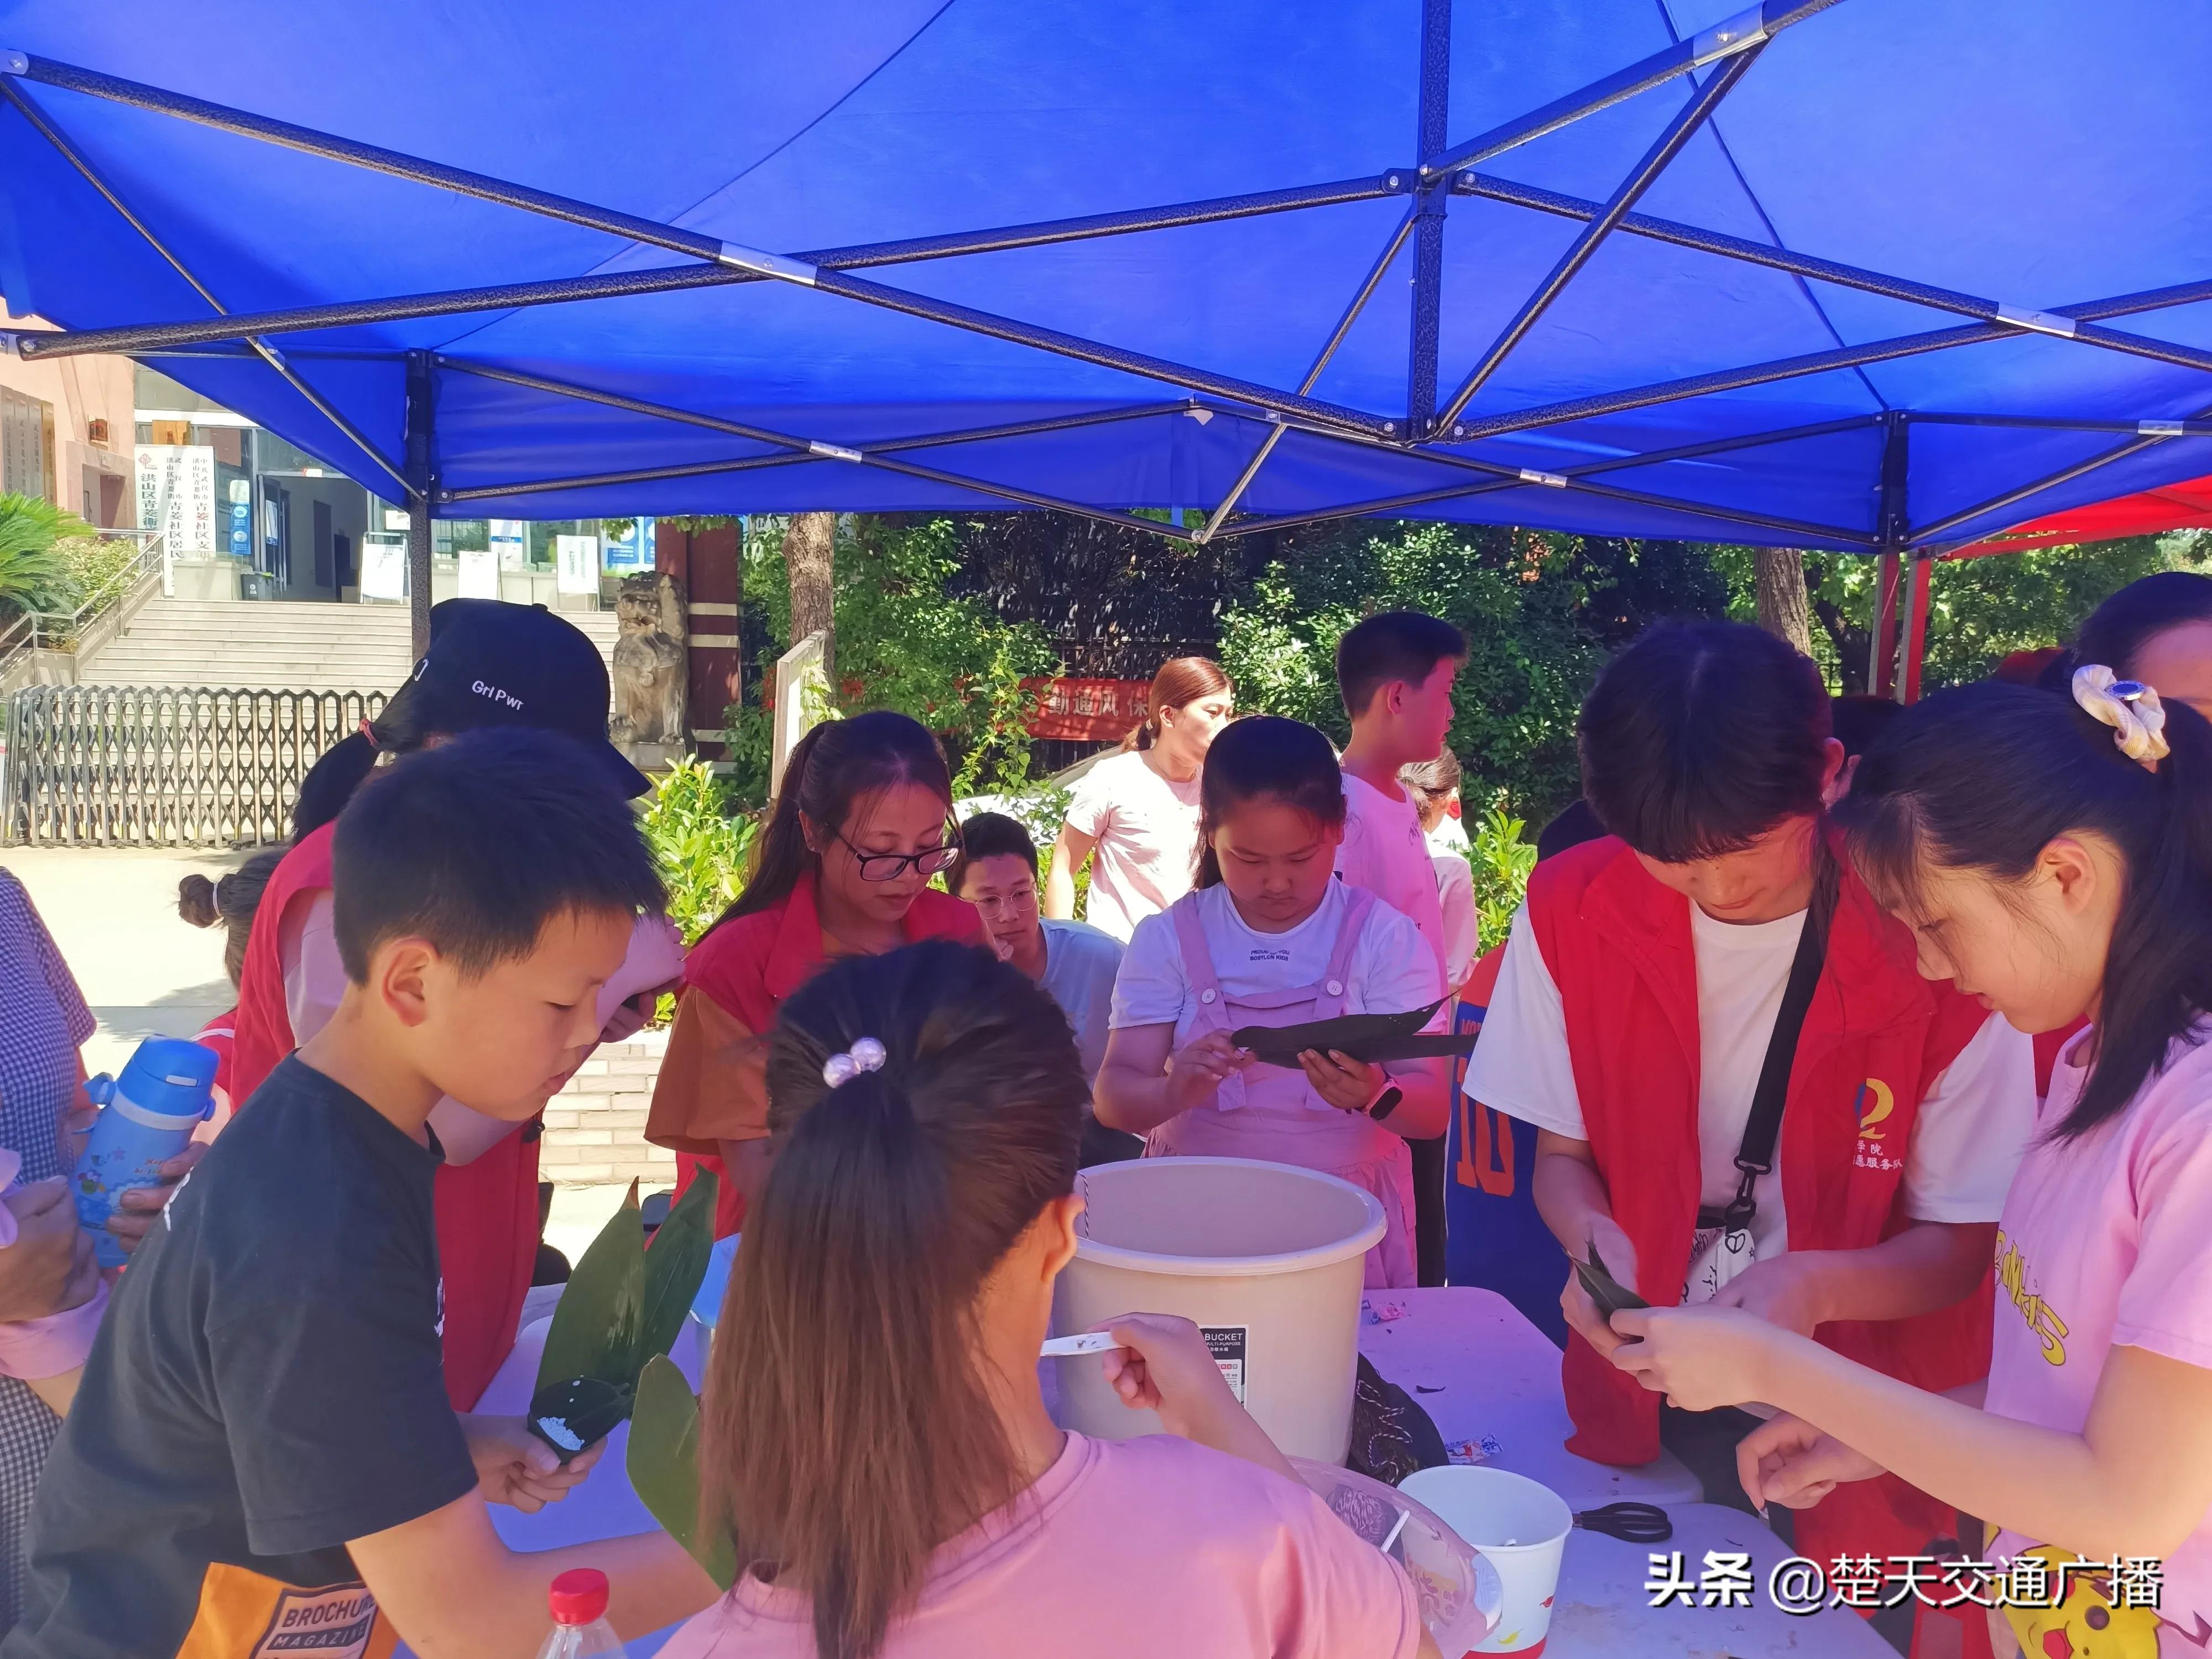 品端午、包粽子 bat365官方亚洲版志愿者与社区儿童提前过端午